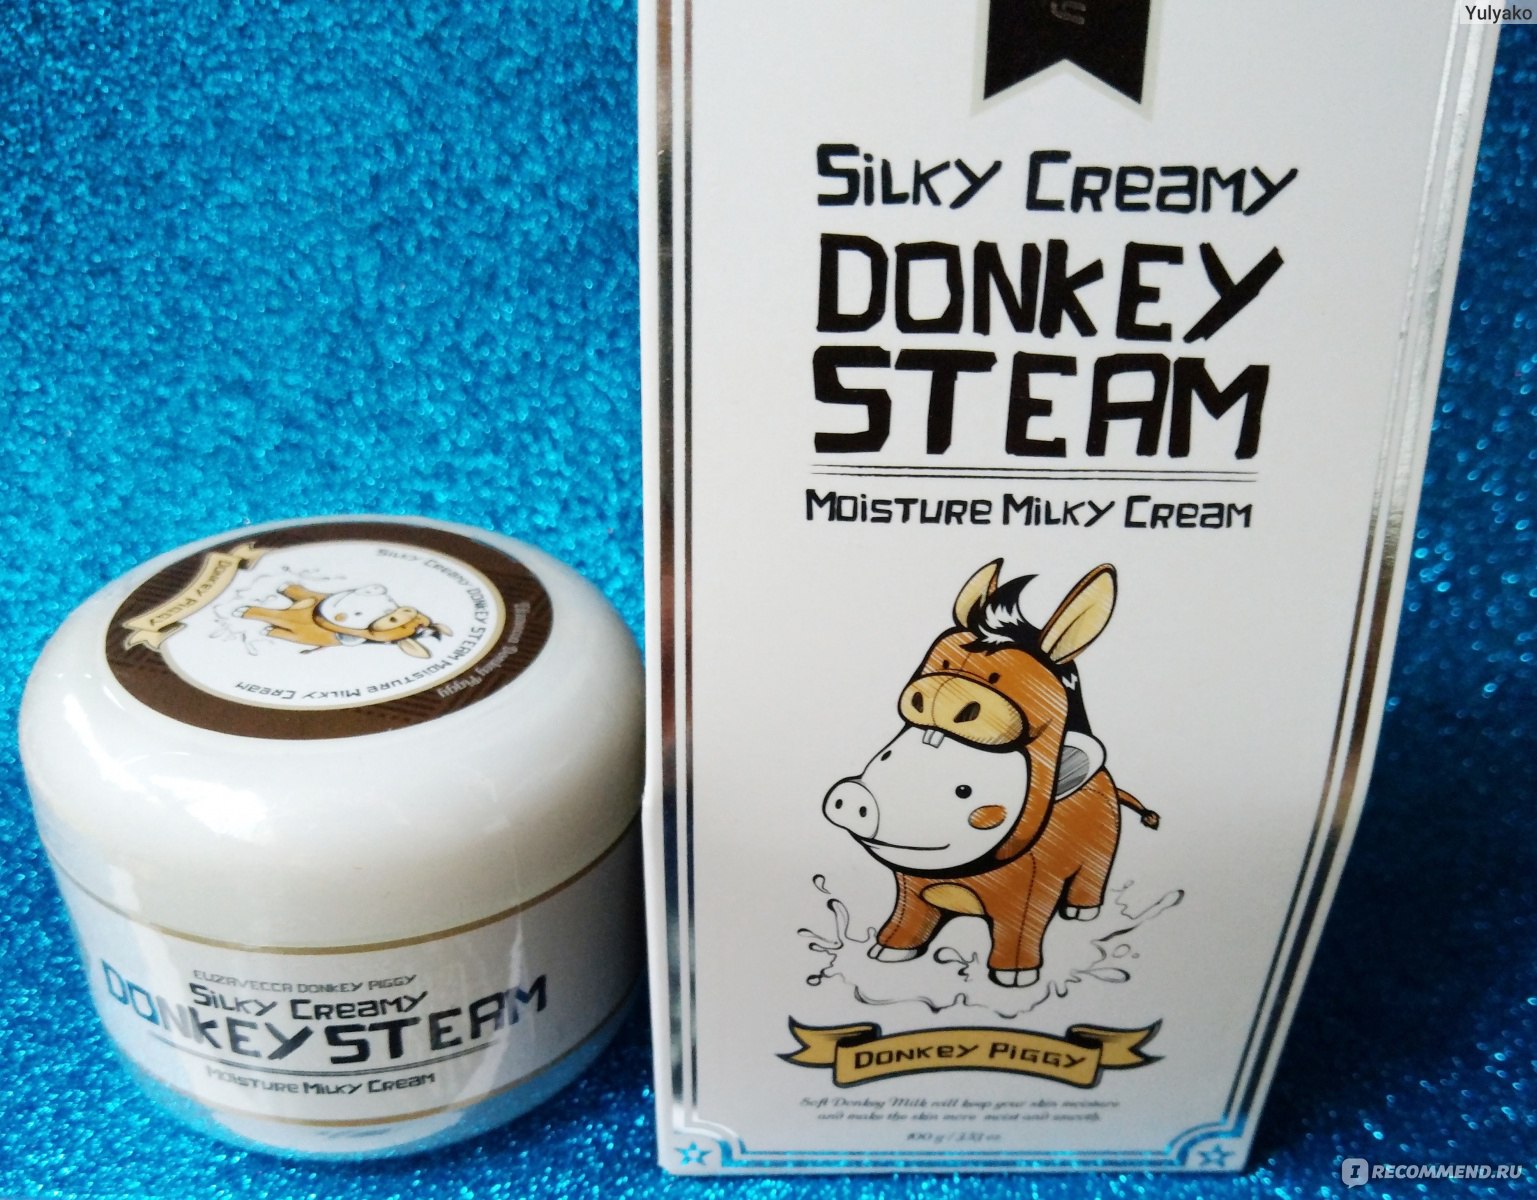 Donkey steam крем для лица elizavecca silky фото 55